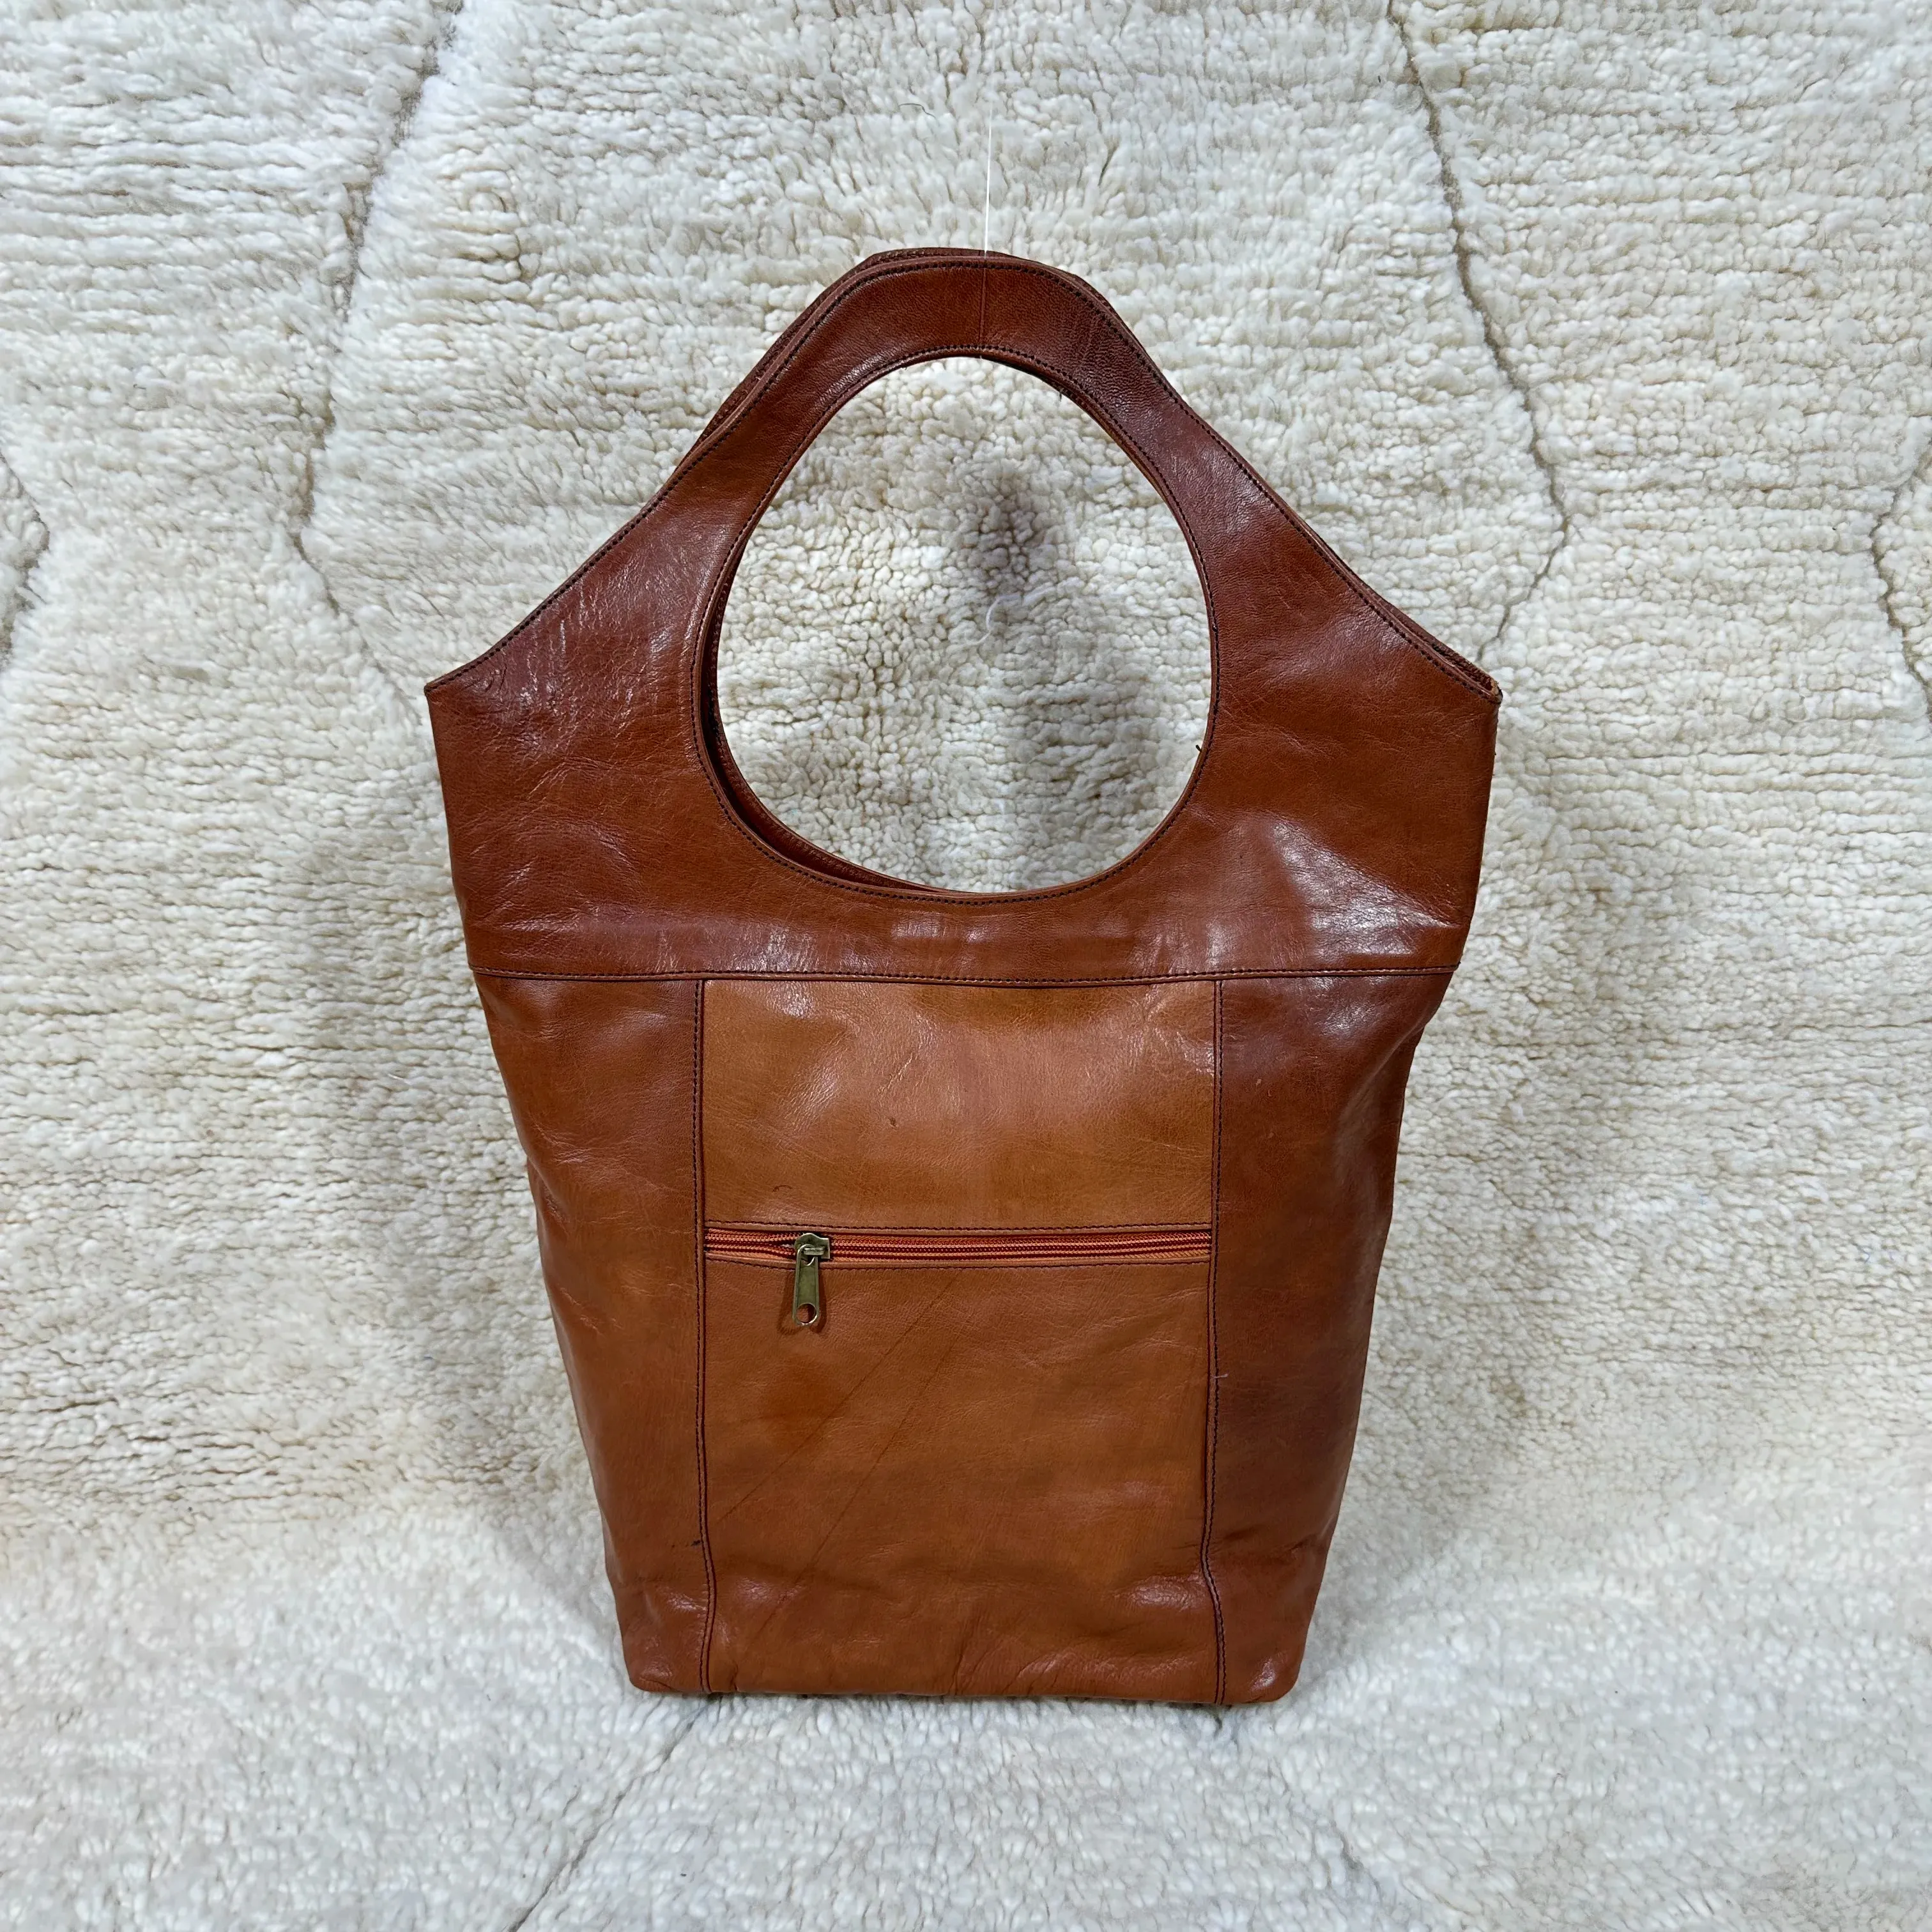 Designer echte glatte Leder-Tote-Tasche marokkanische echte Leder-Schultertasche für Damenhandtasche zu niedrigem Preis